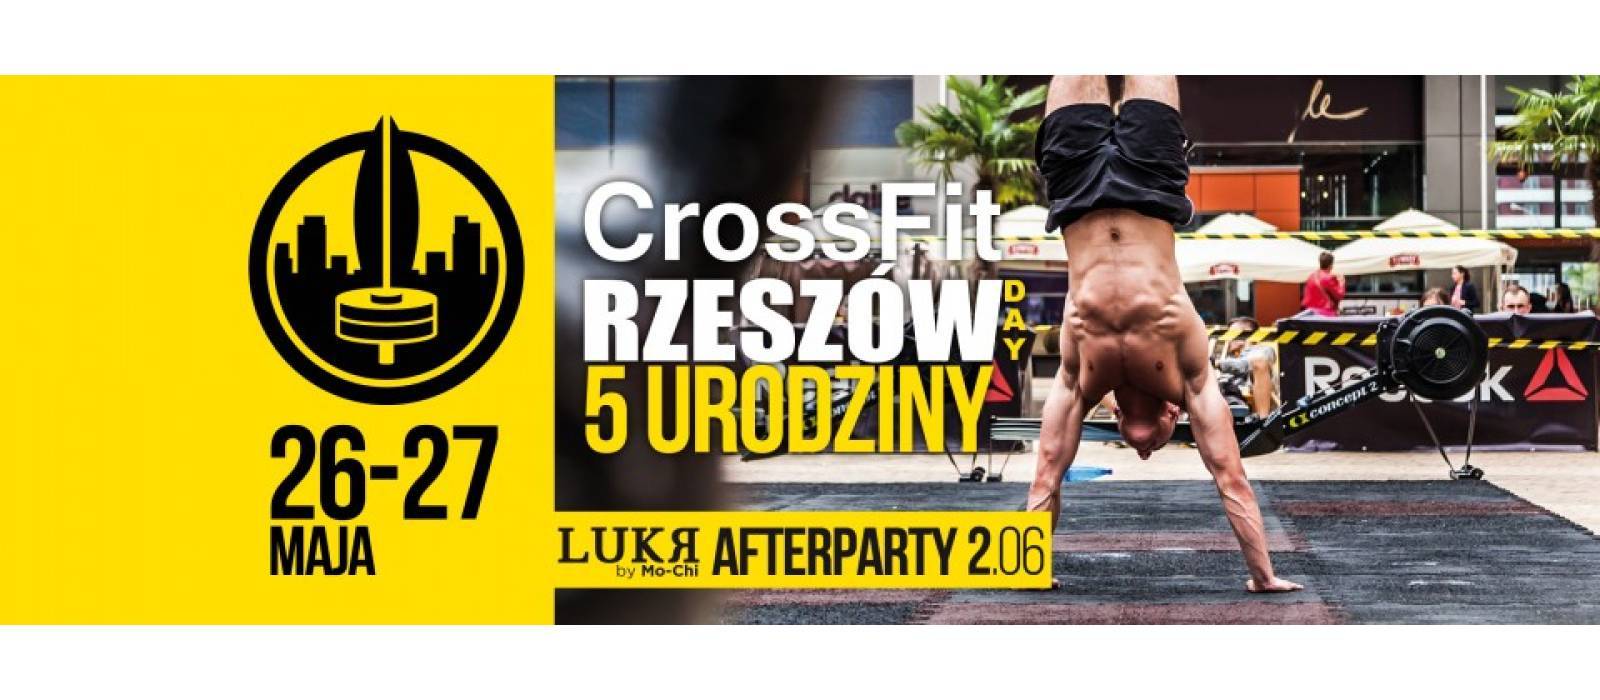 CrossFit Rzeszów Days w Millenium Hall - 1